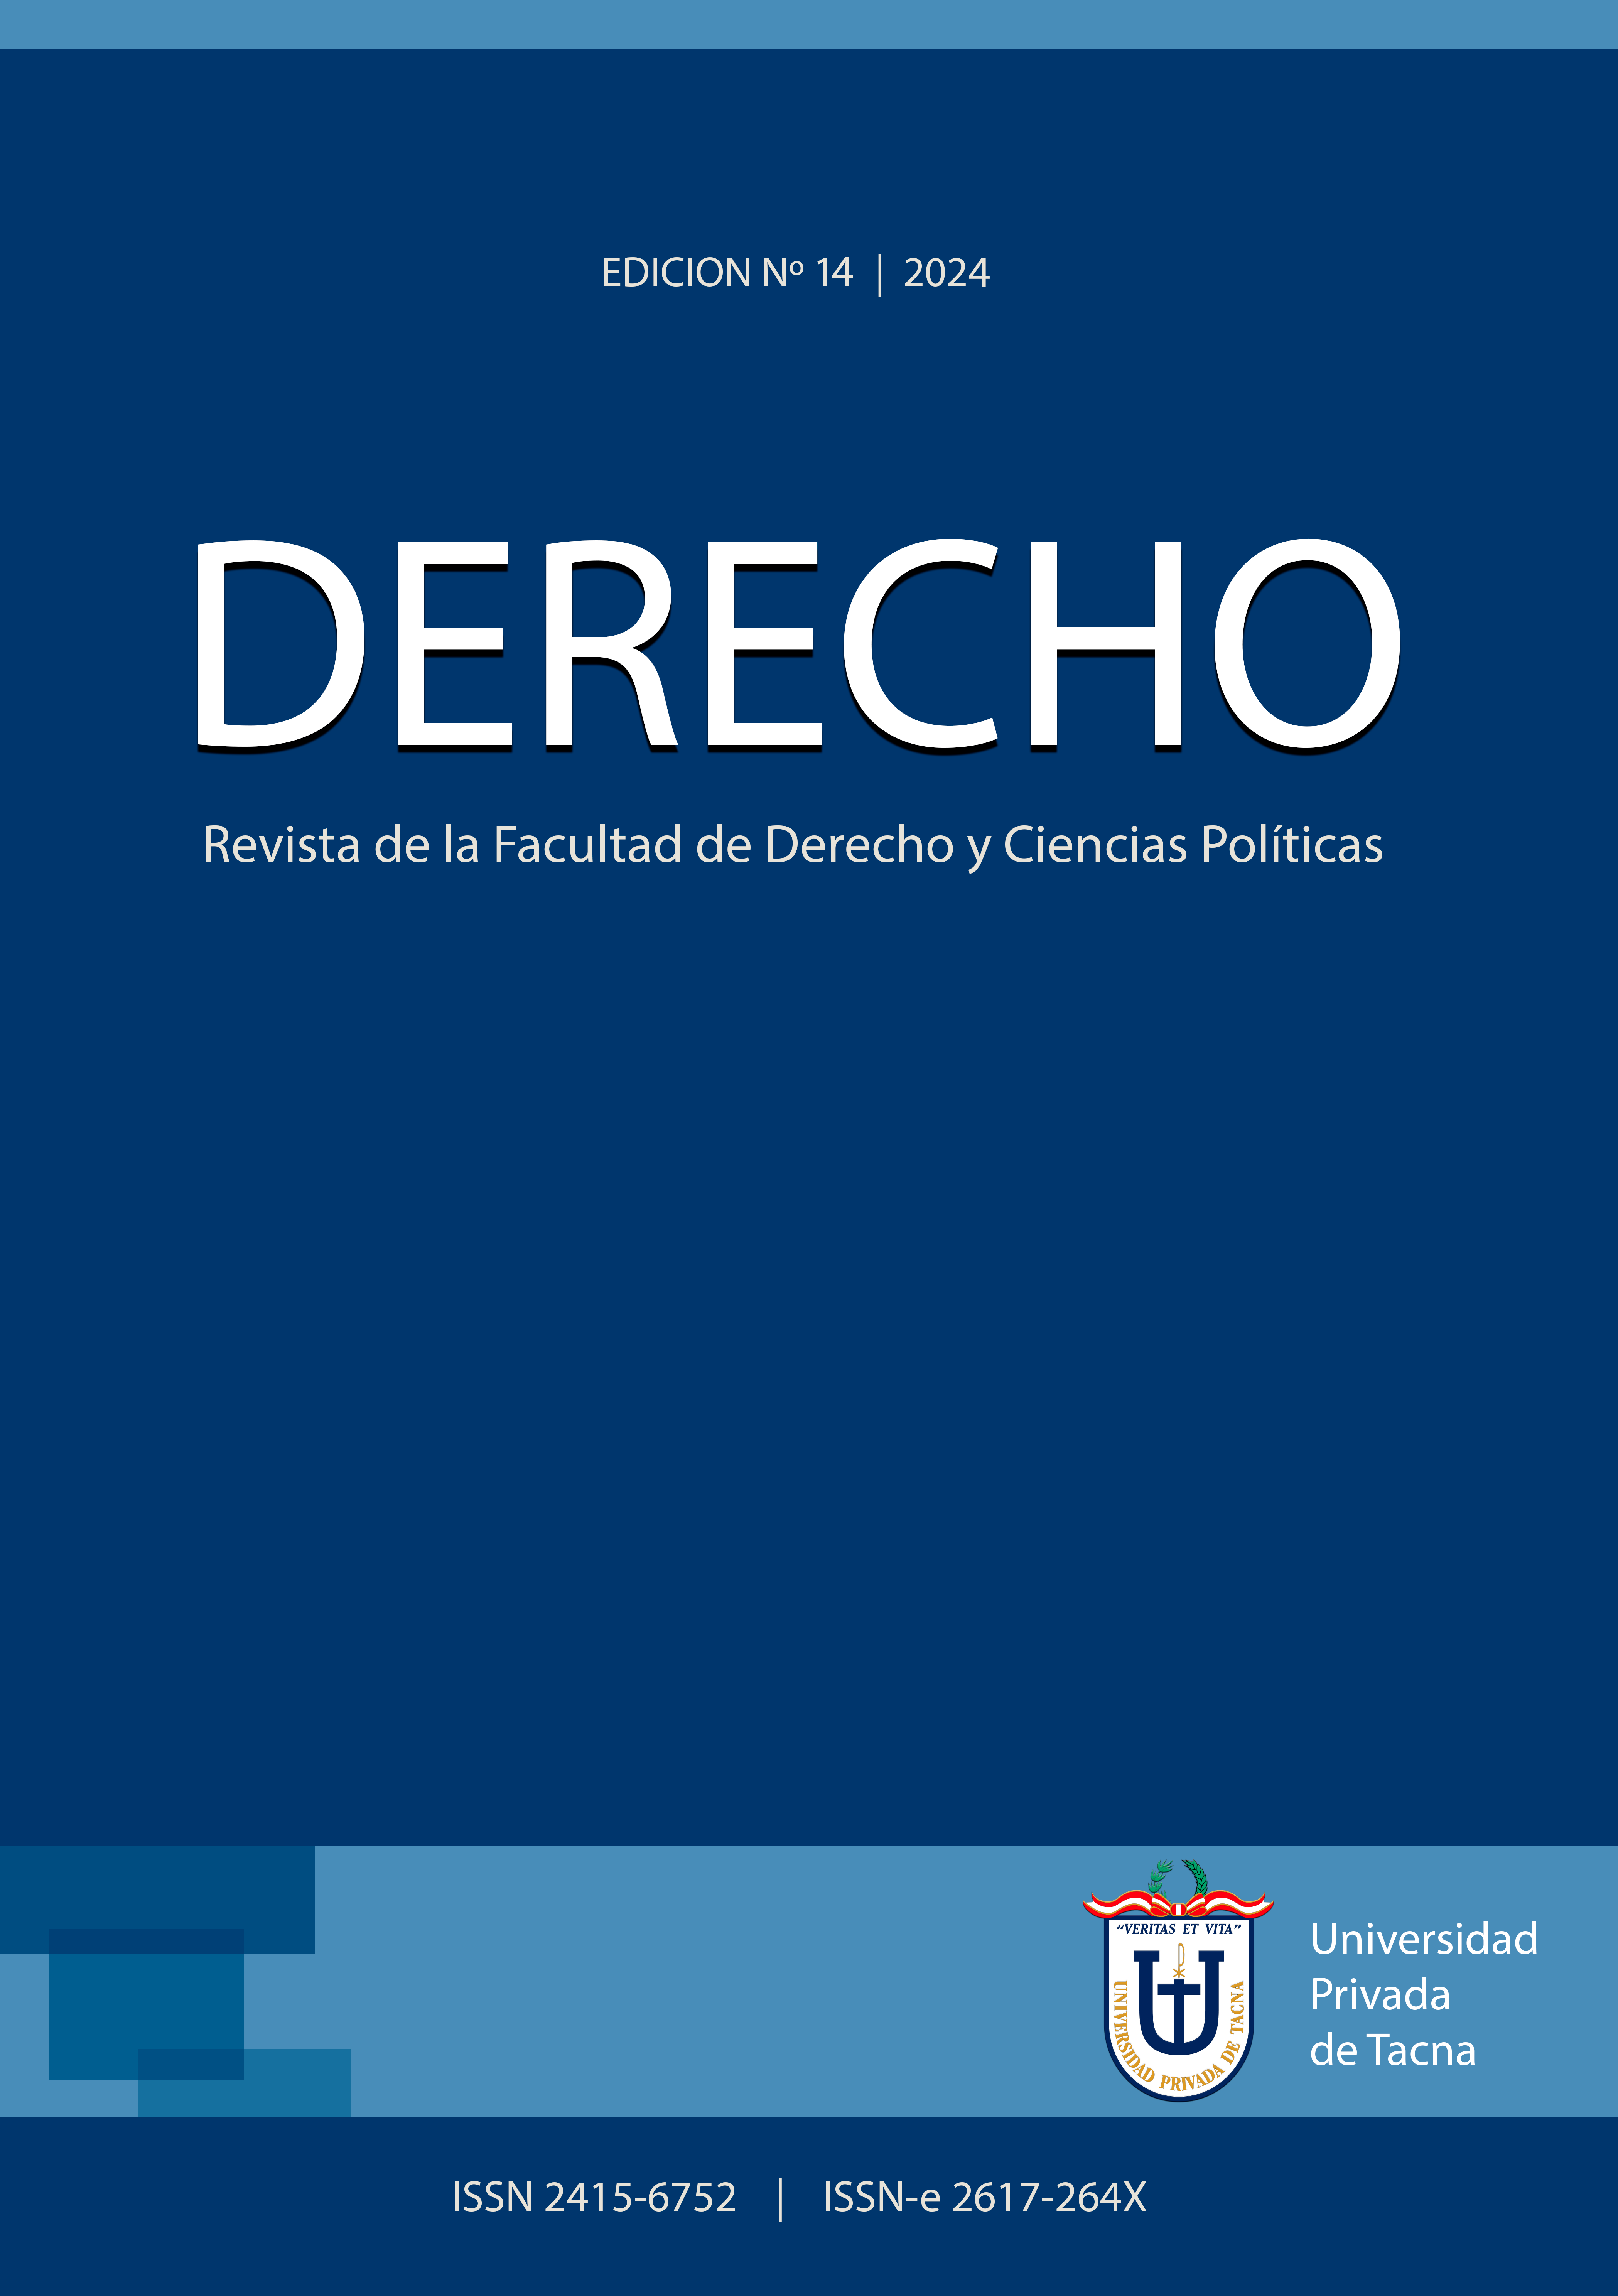 					Ver Vol. 14 Núm. 14 (2024): DERECHO: Revista de la Facultad de Derecho y Ciencias Políticas
				